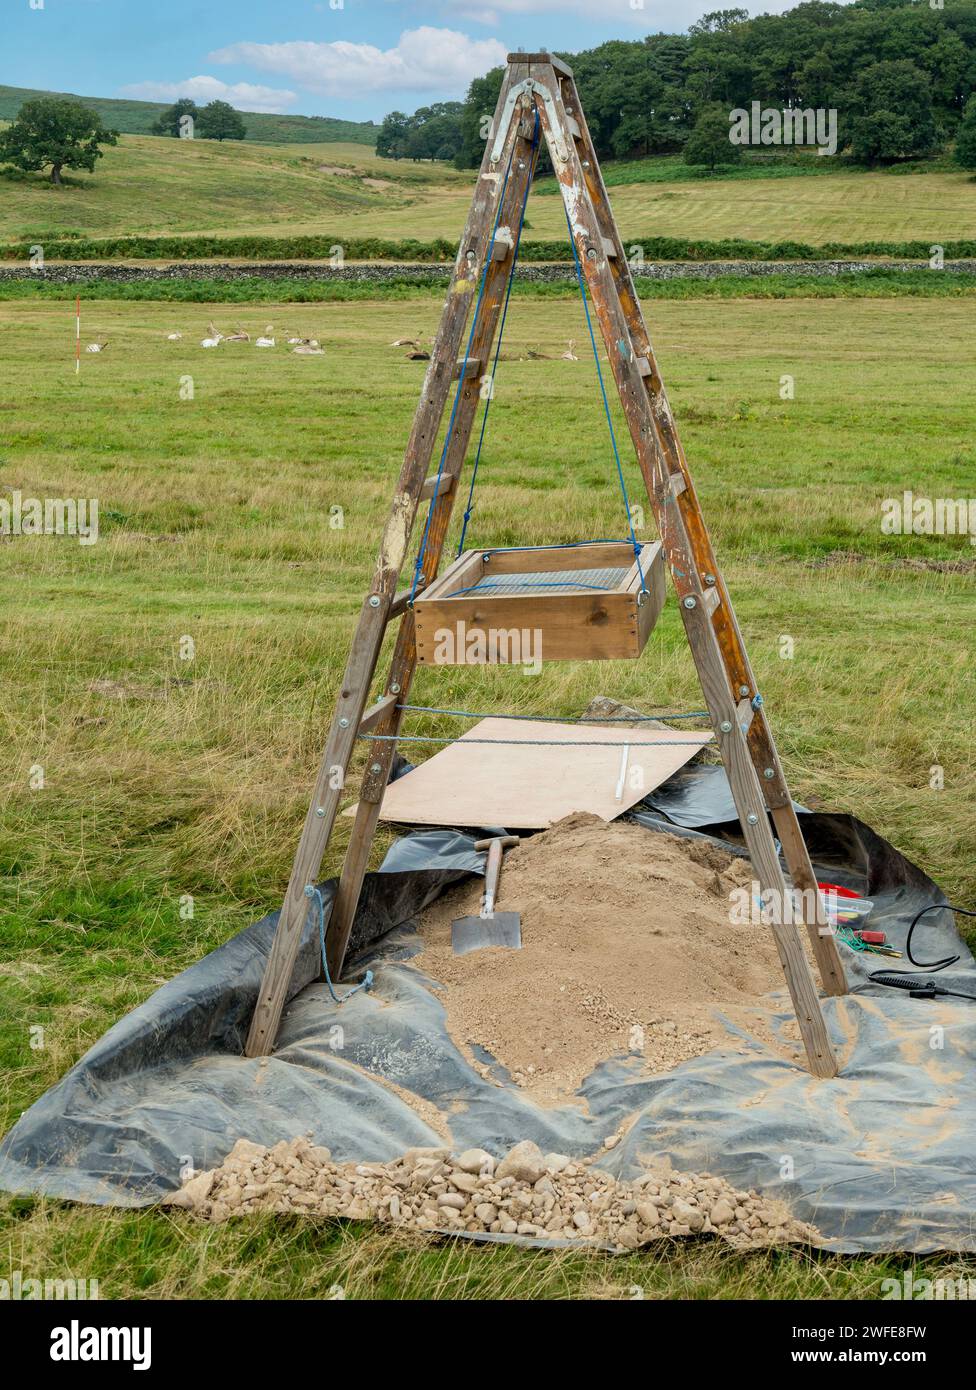 Treppiede / setaccio per archeologia montato su telaio A / setaccio / schermo a Bradgate Park, Leicestershire, Inghilterra, Regno Unito Foto Stock